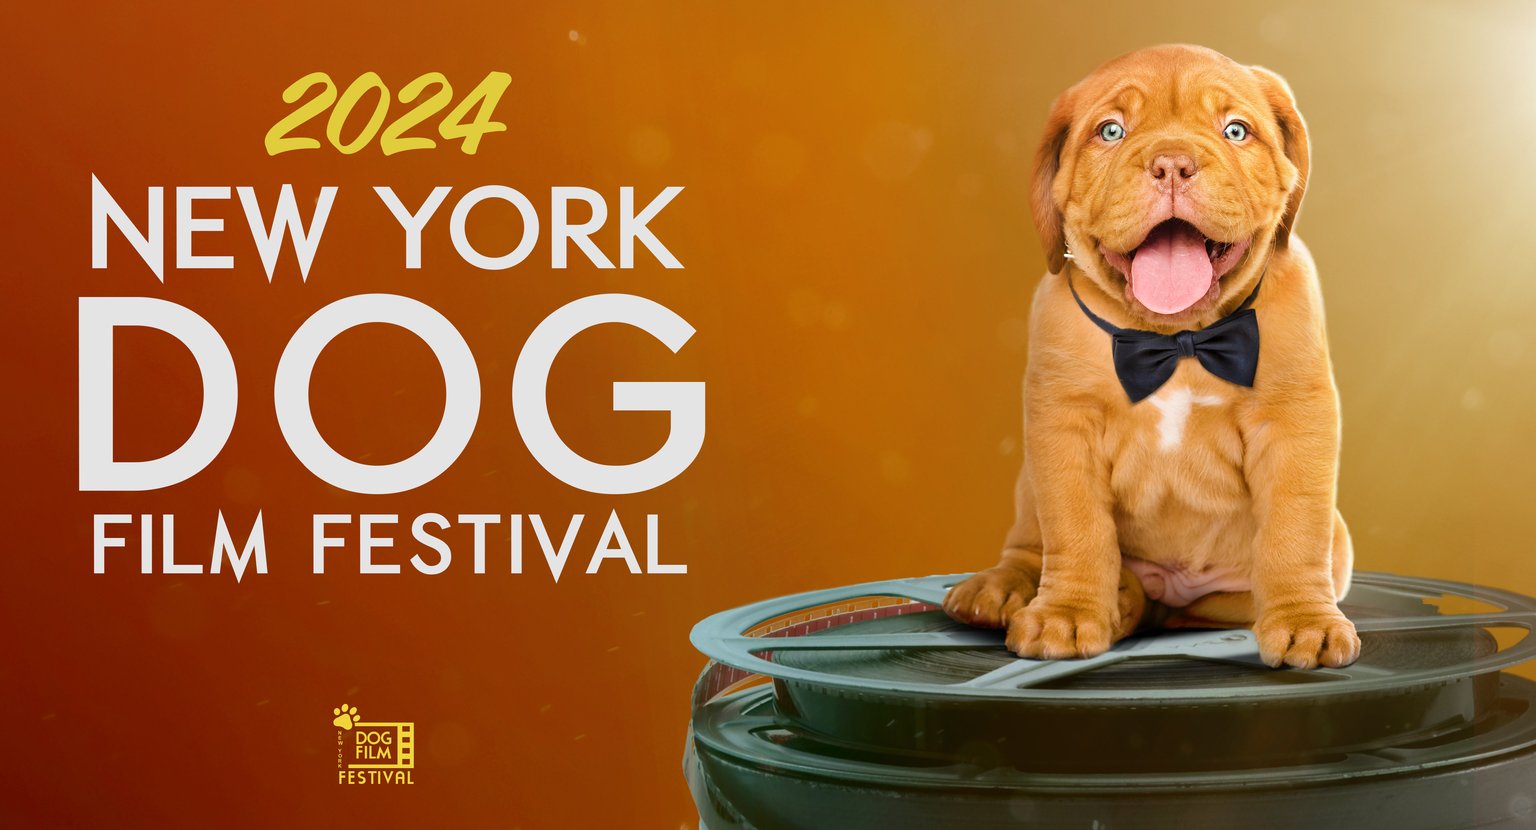 The 2024 NY Dog Film Festival